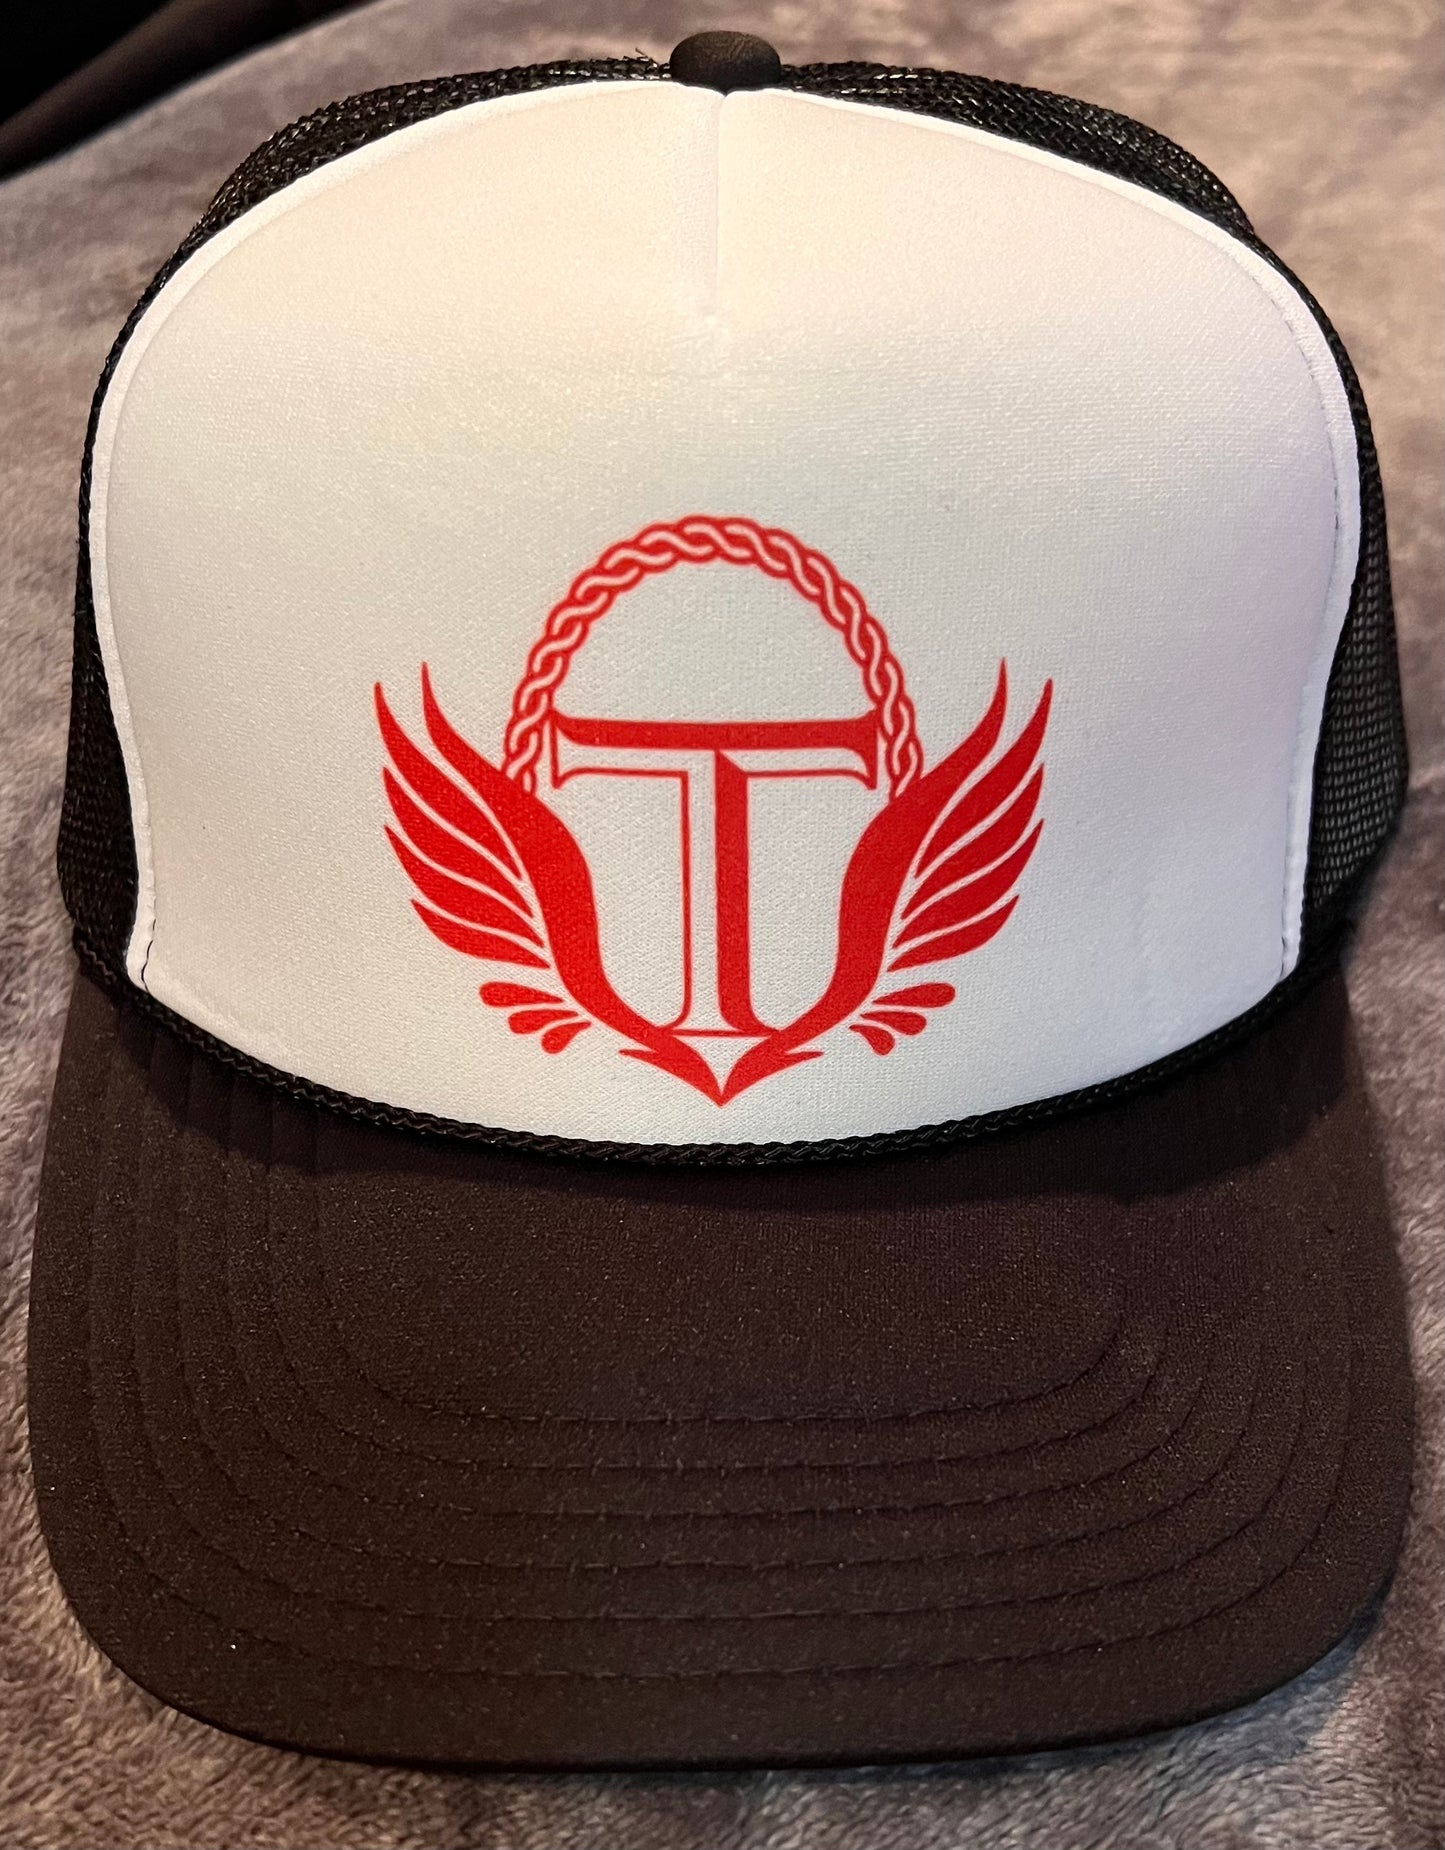 Truth Gear Trucker hats